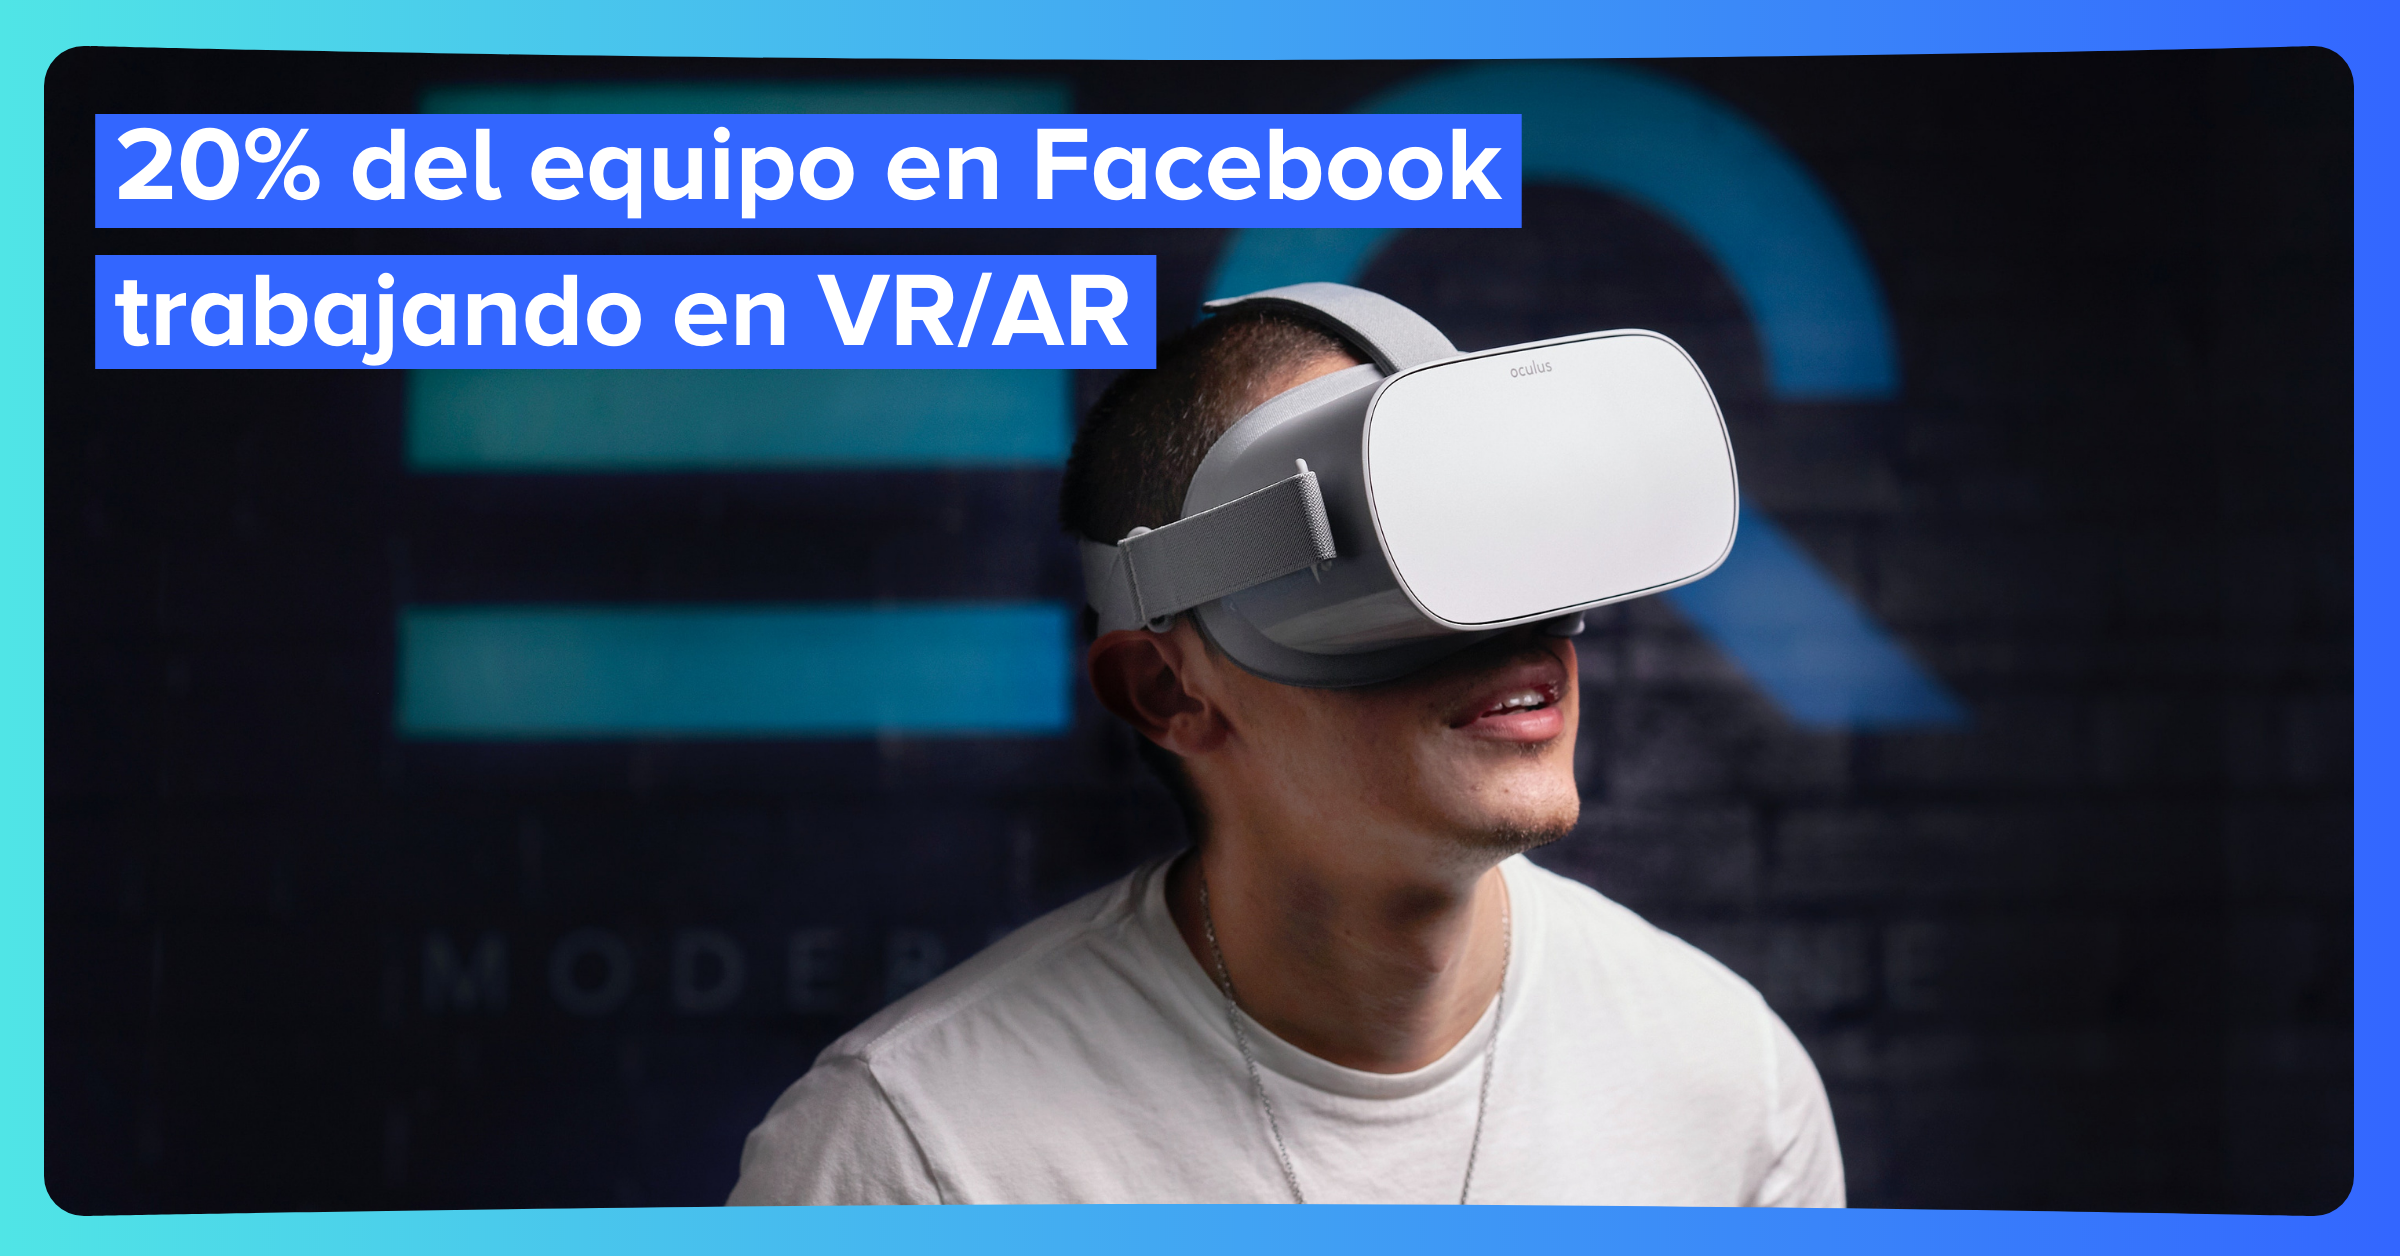 20% del equipo en Facebook trabajando en VR/AR